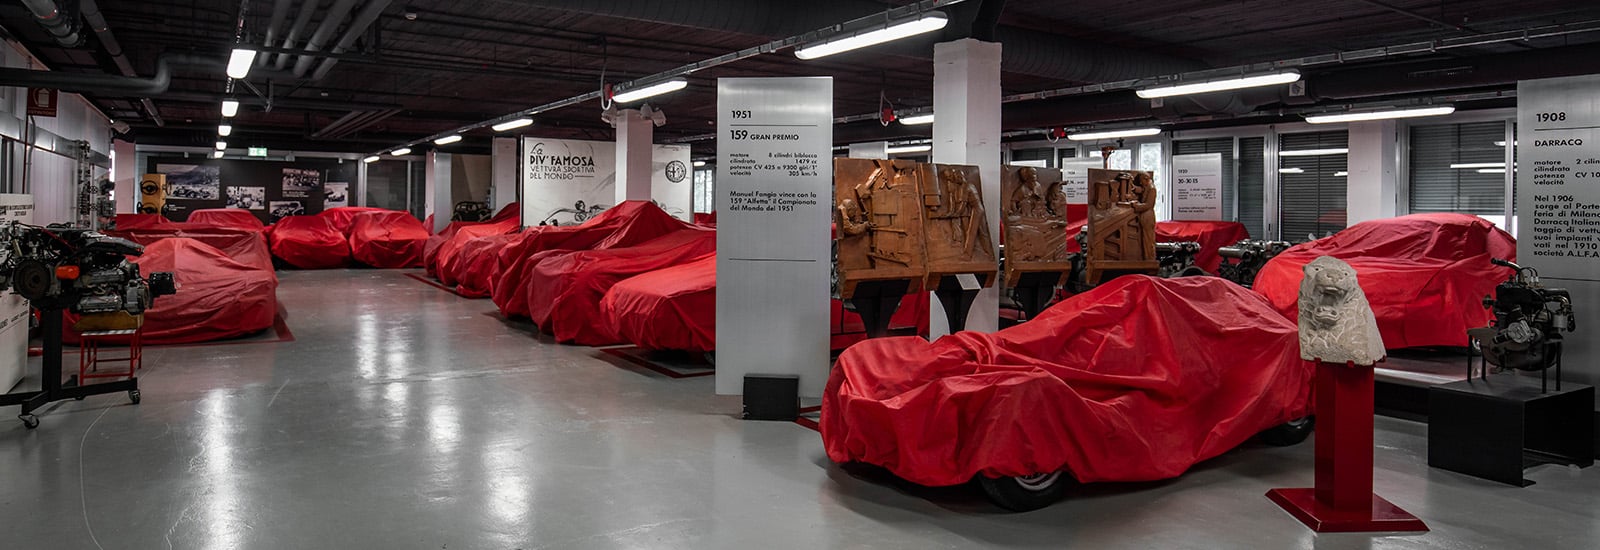 Lunes de museos: Museo de Alfa Romeo en Arese, Italia